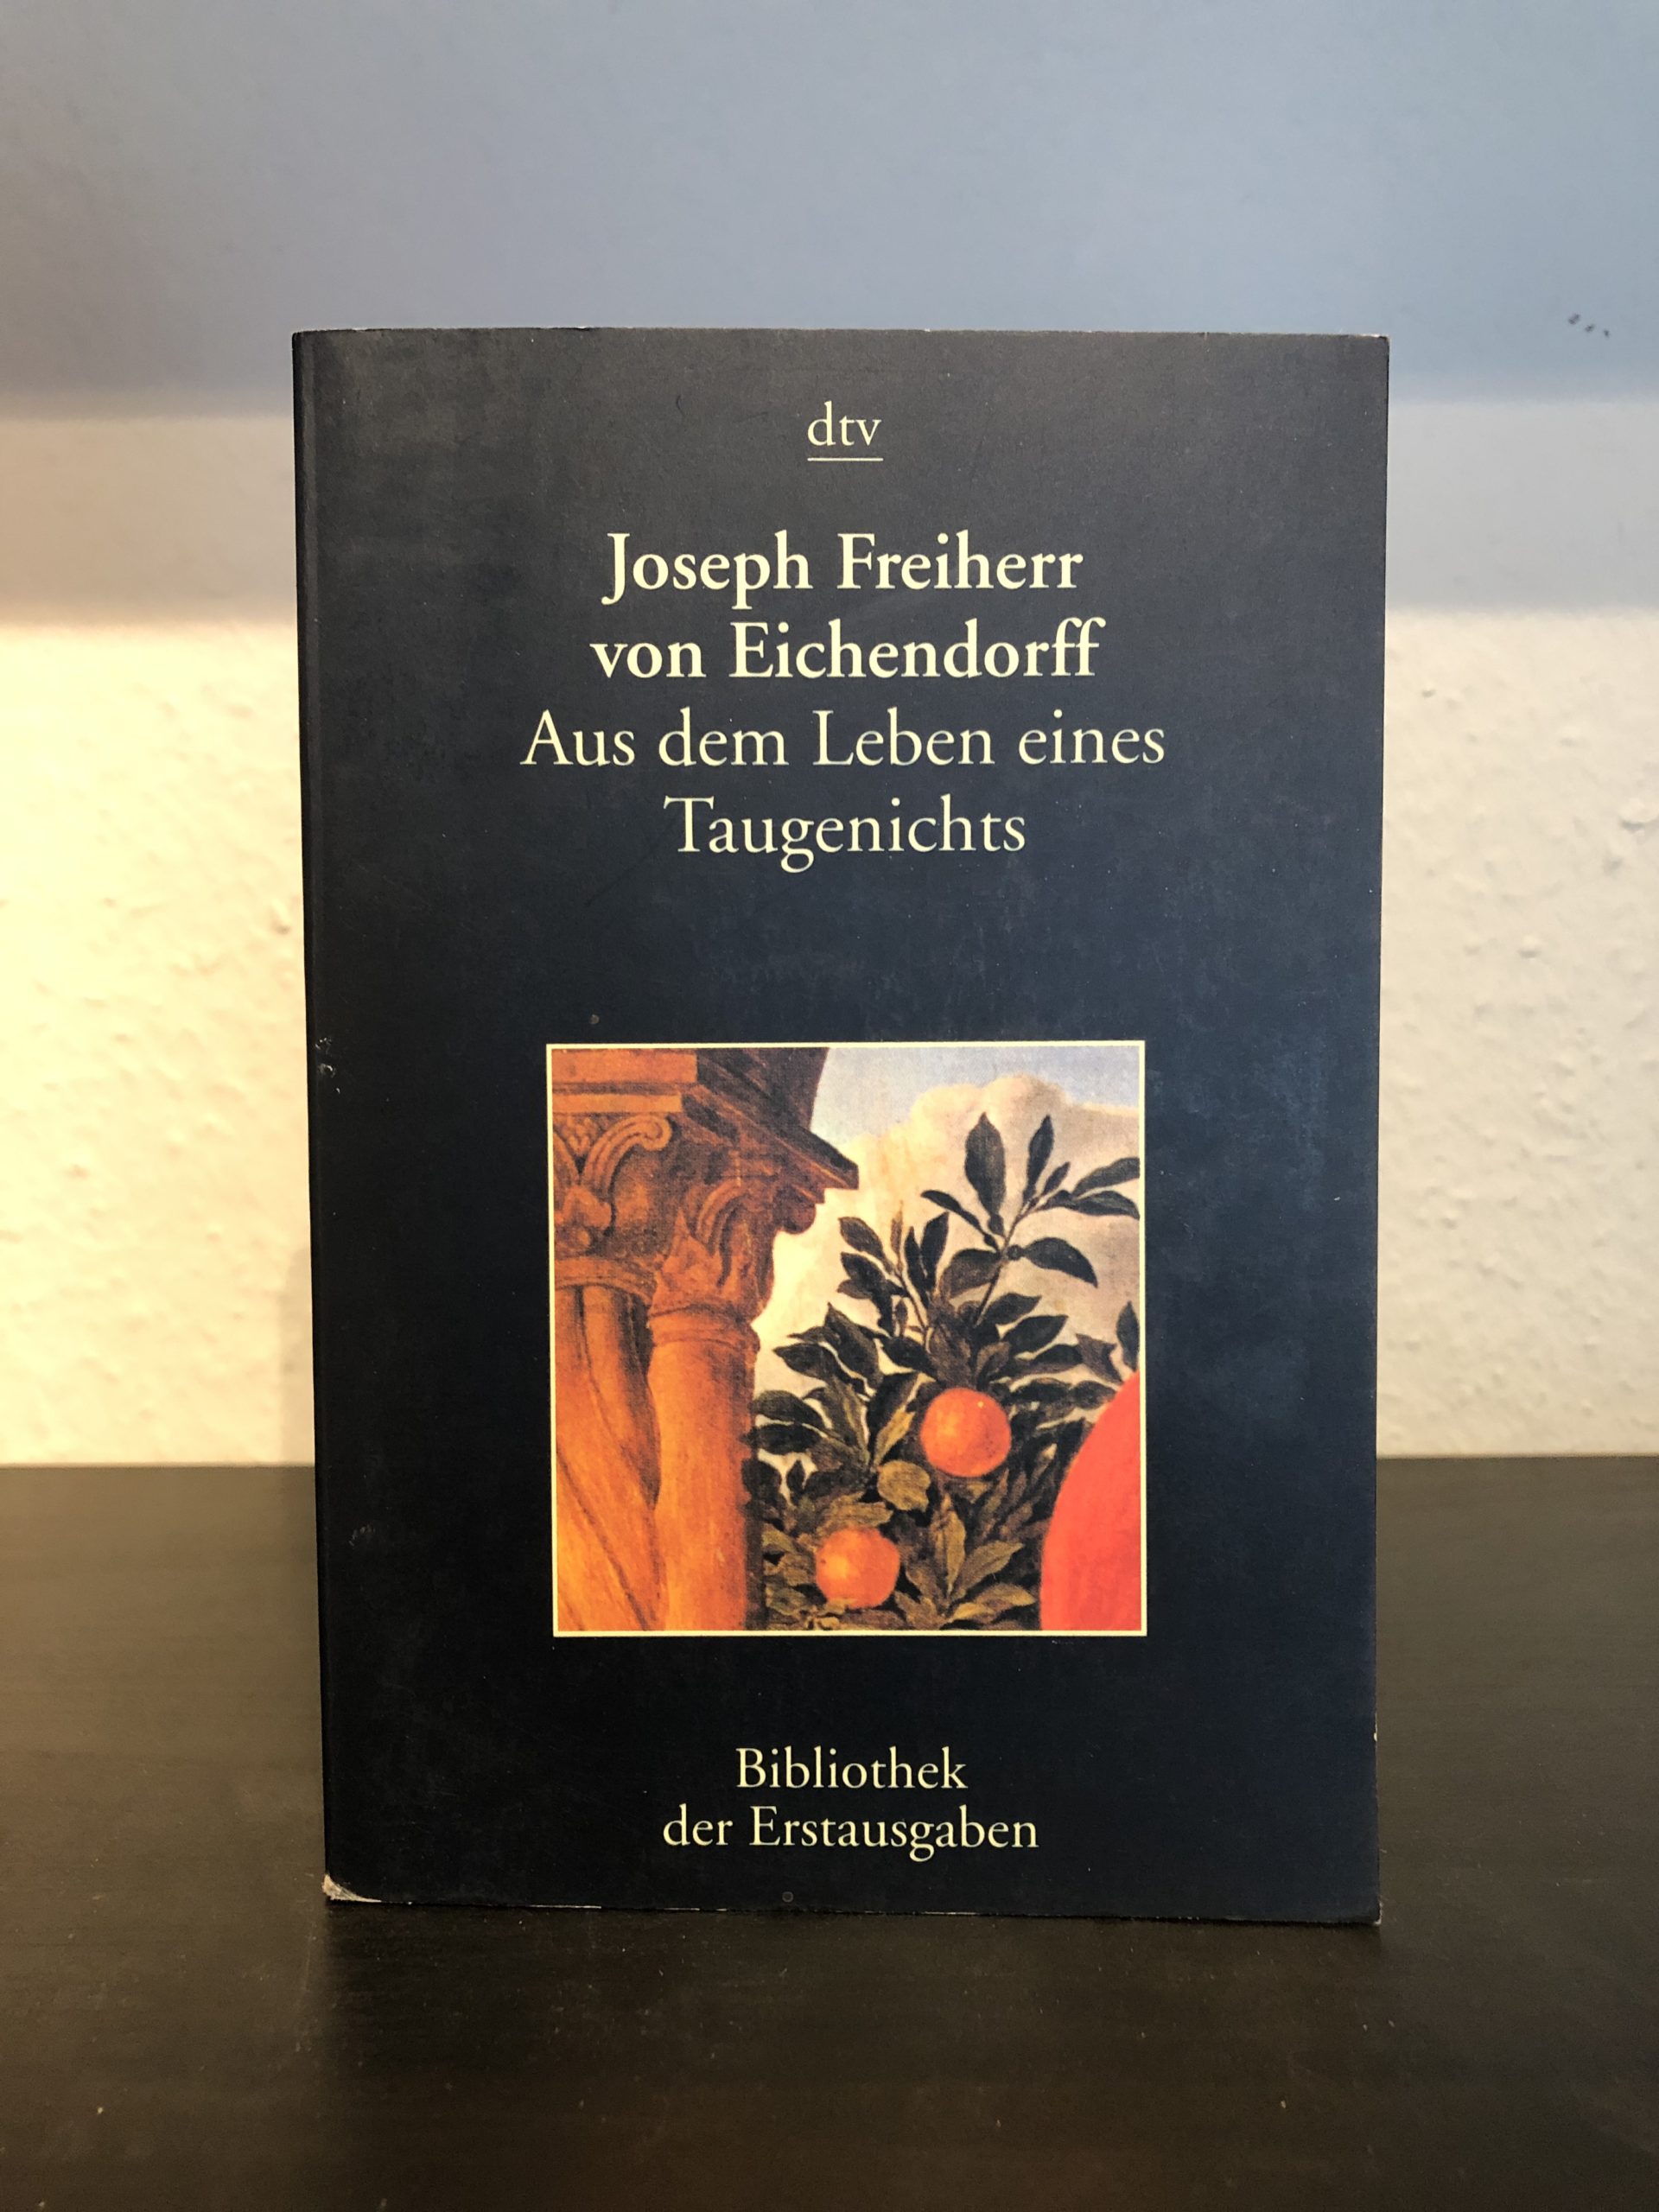 Aus dem Leben eines Taugenichts - Joseph von Eichendorff